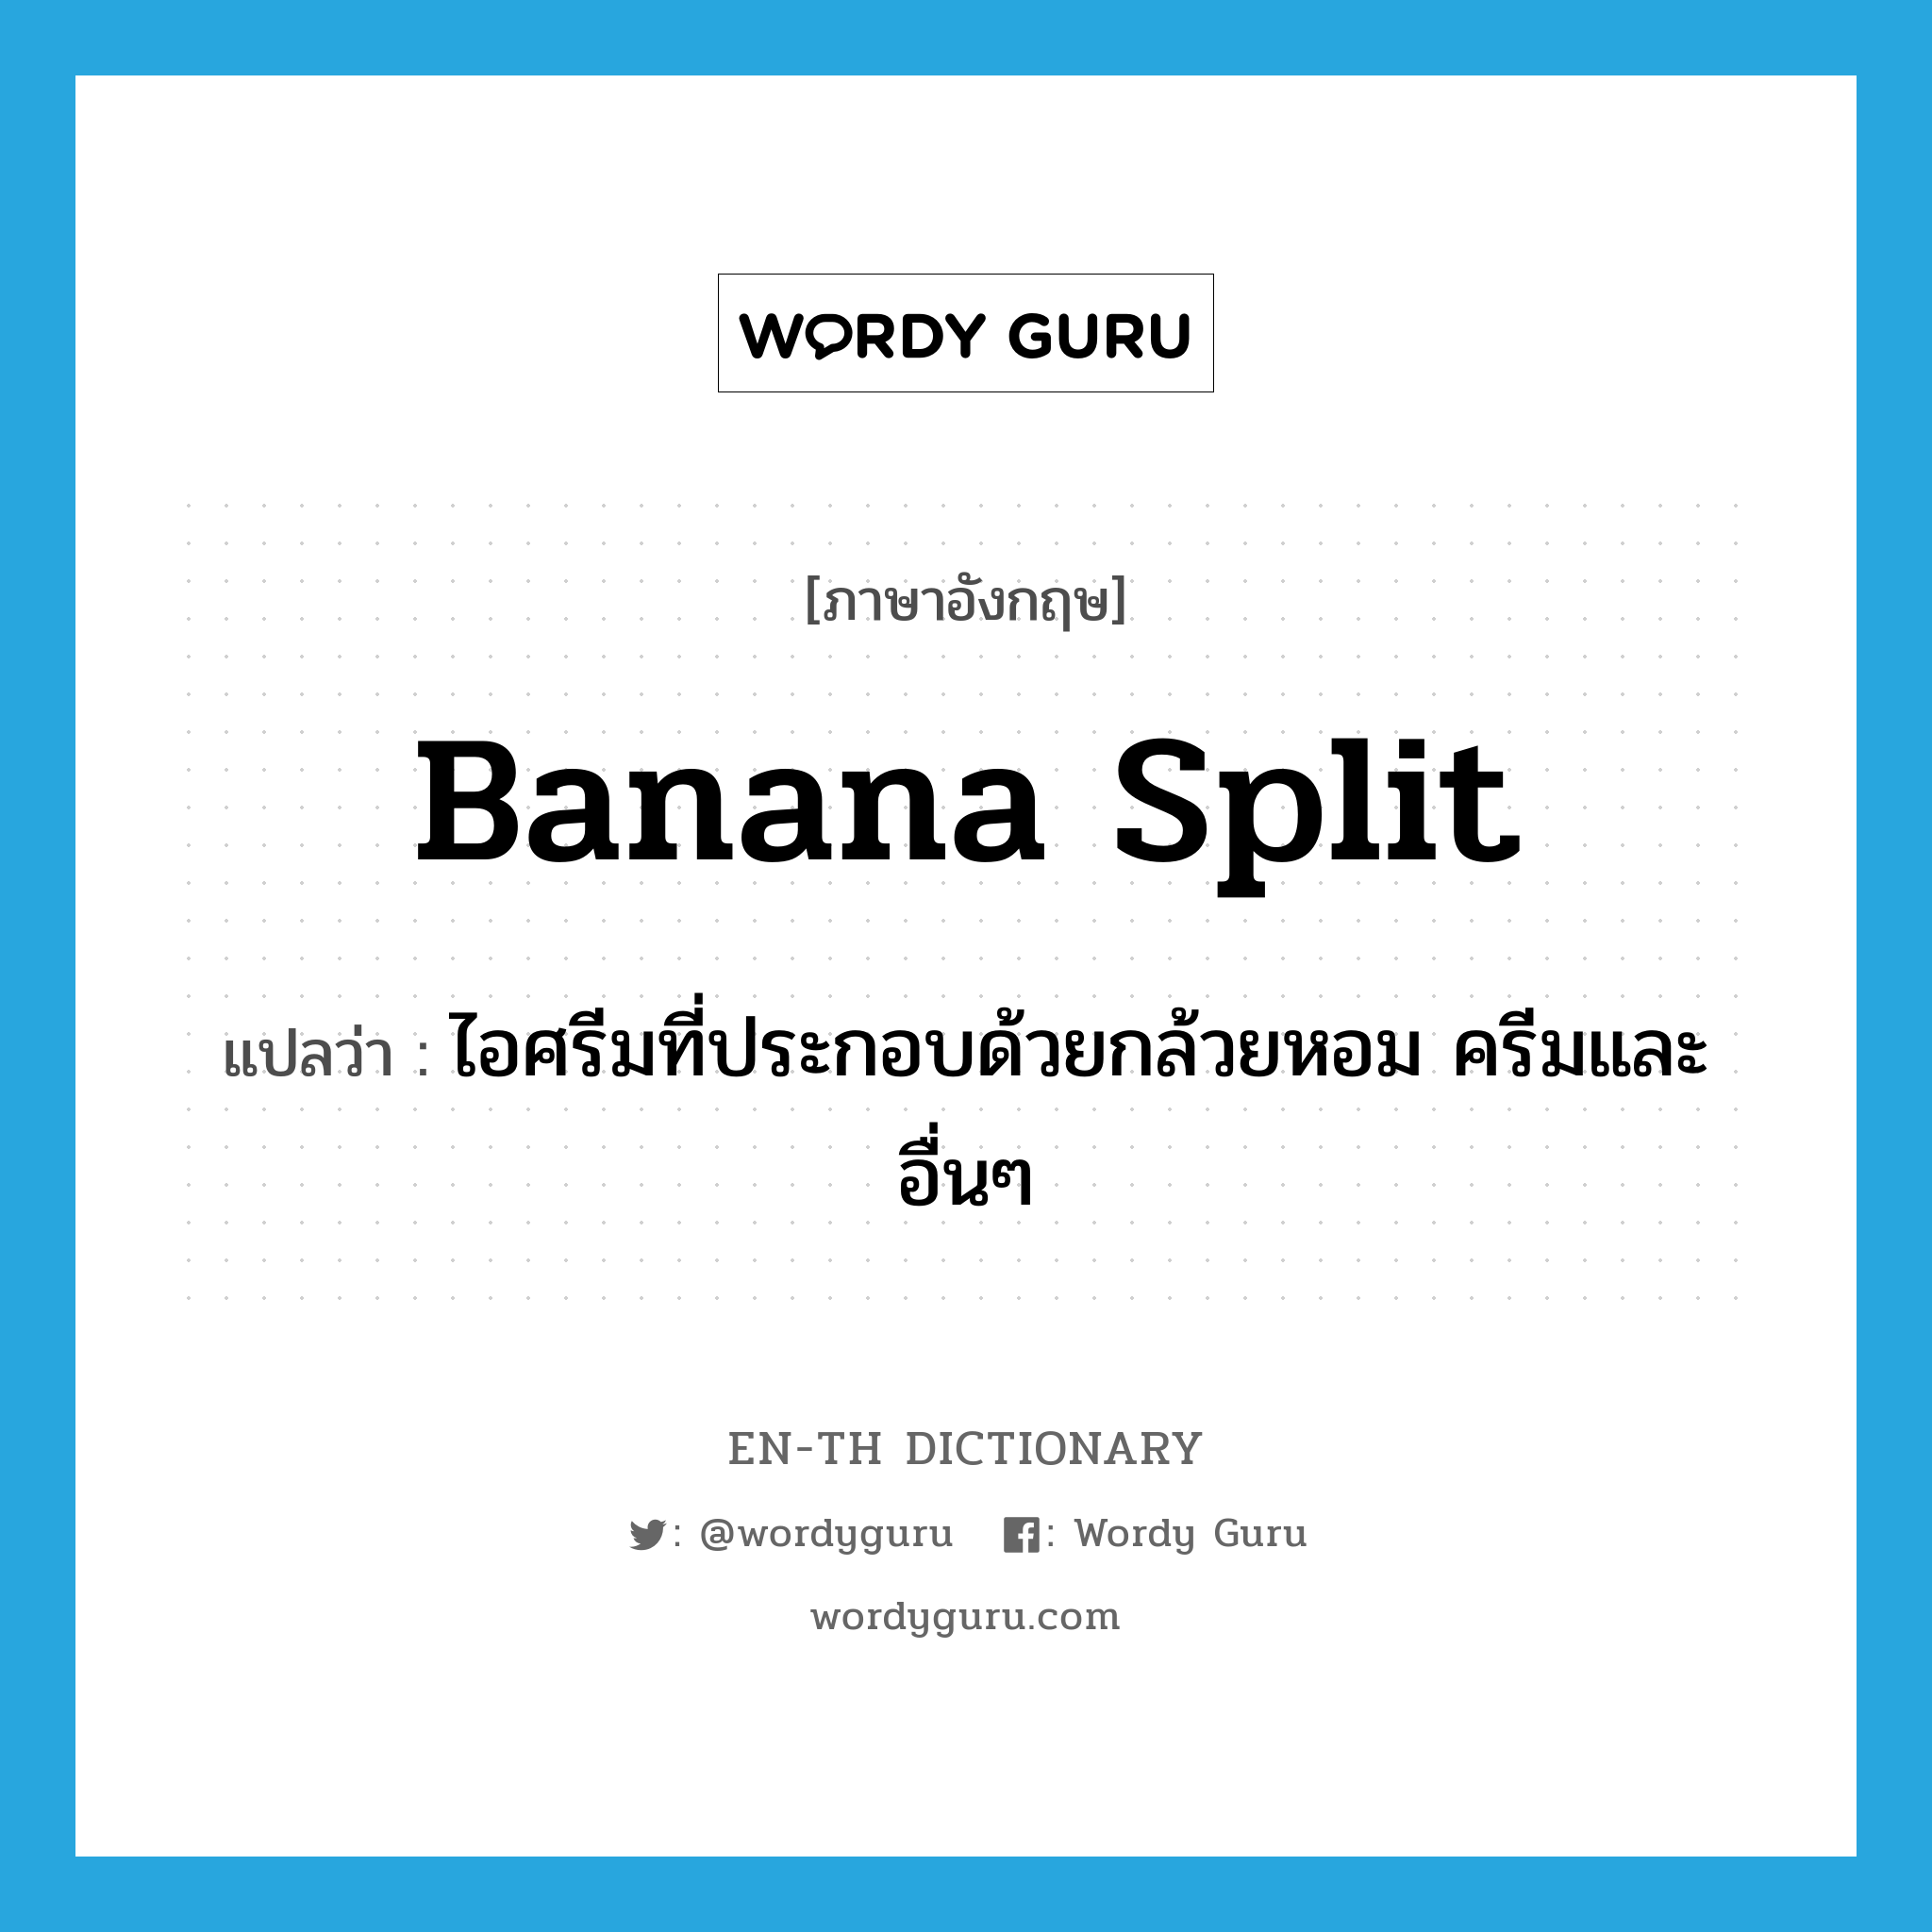 banana split แปลว่า?, คำศัพท์ภาษาอังกฤษ banana split แปลว่า ไอศรีมที่ประกอบด้วยกล้วยหอม ครีมและอื่นๆ ประเภท N หมวด N